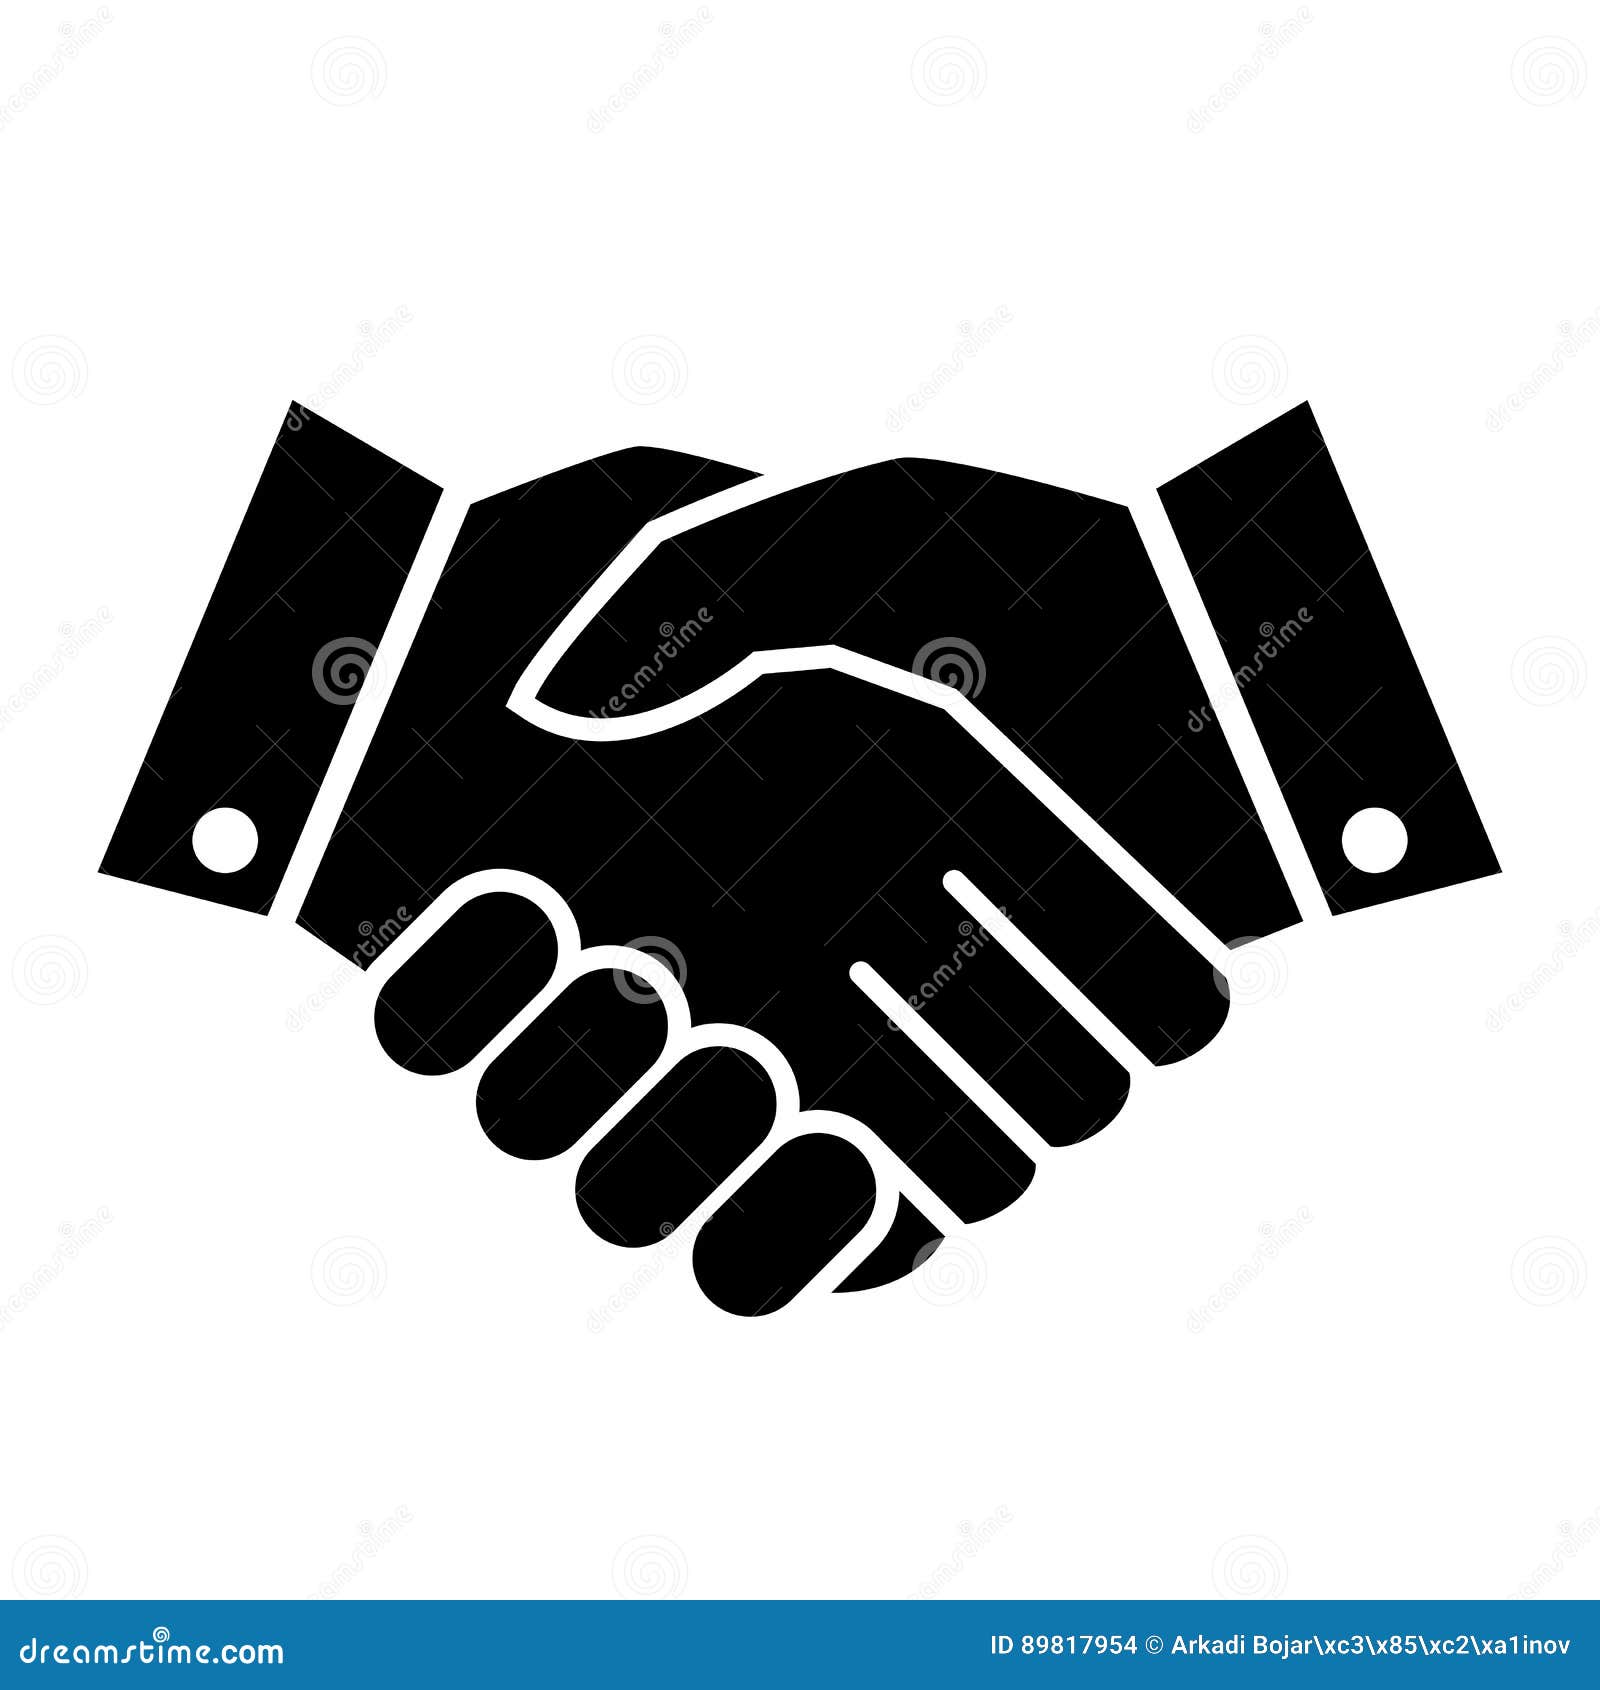 Premium Vector  Handshake vector flat icon. isolated hand shake